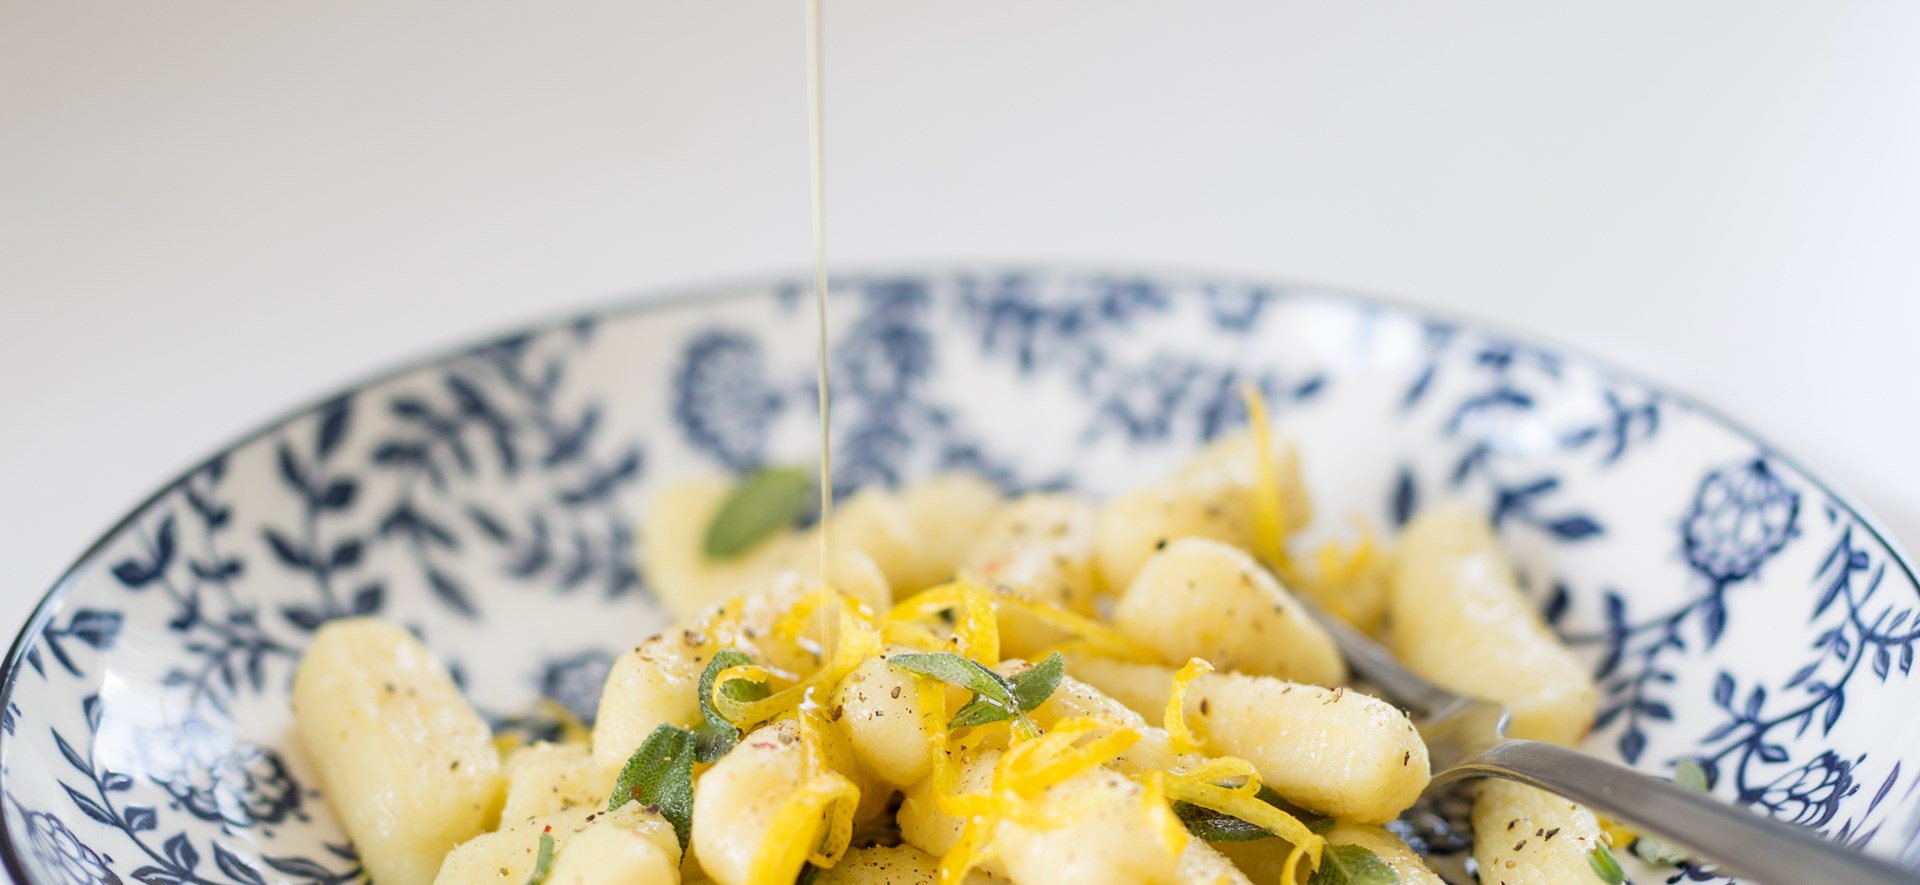 Bild zu Kartoffelgnocchi mit frischem Salbei und Zitronenzesten